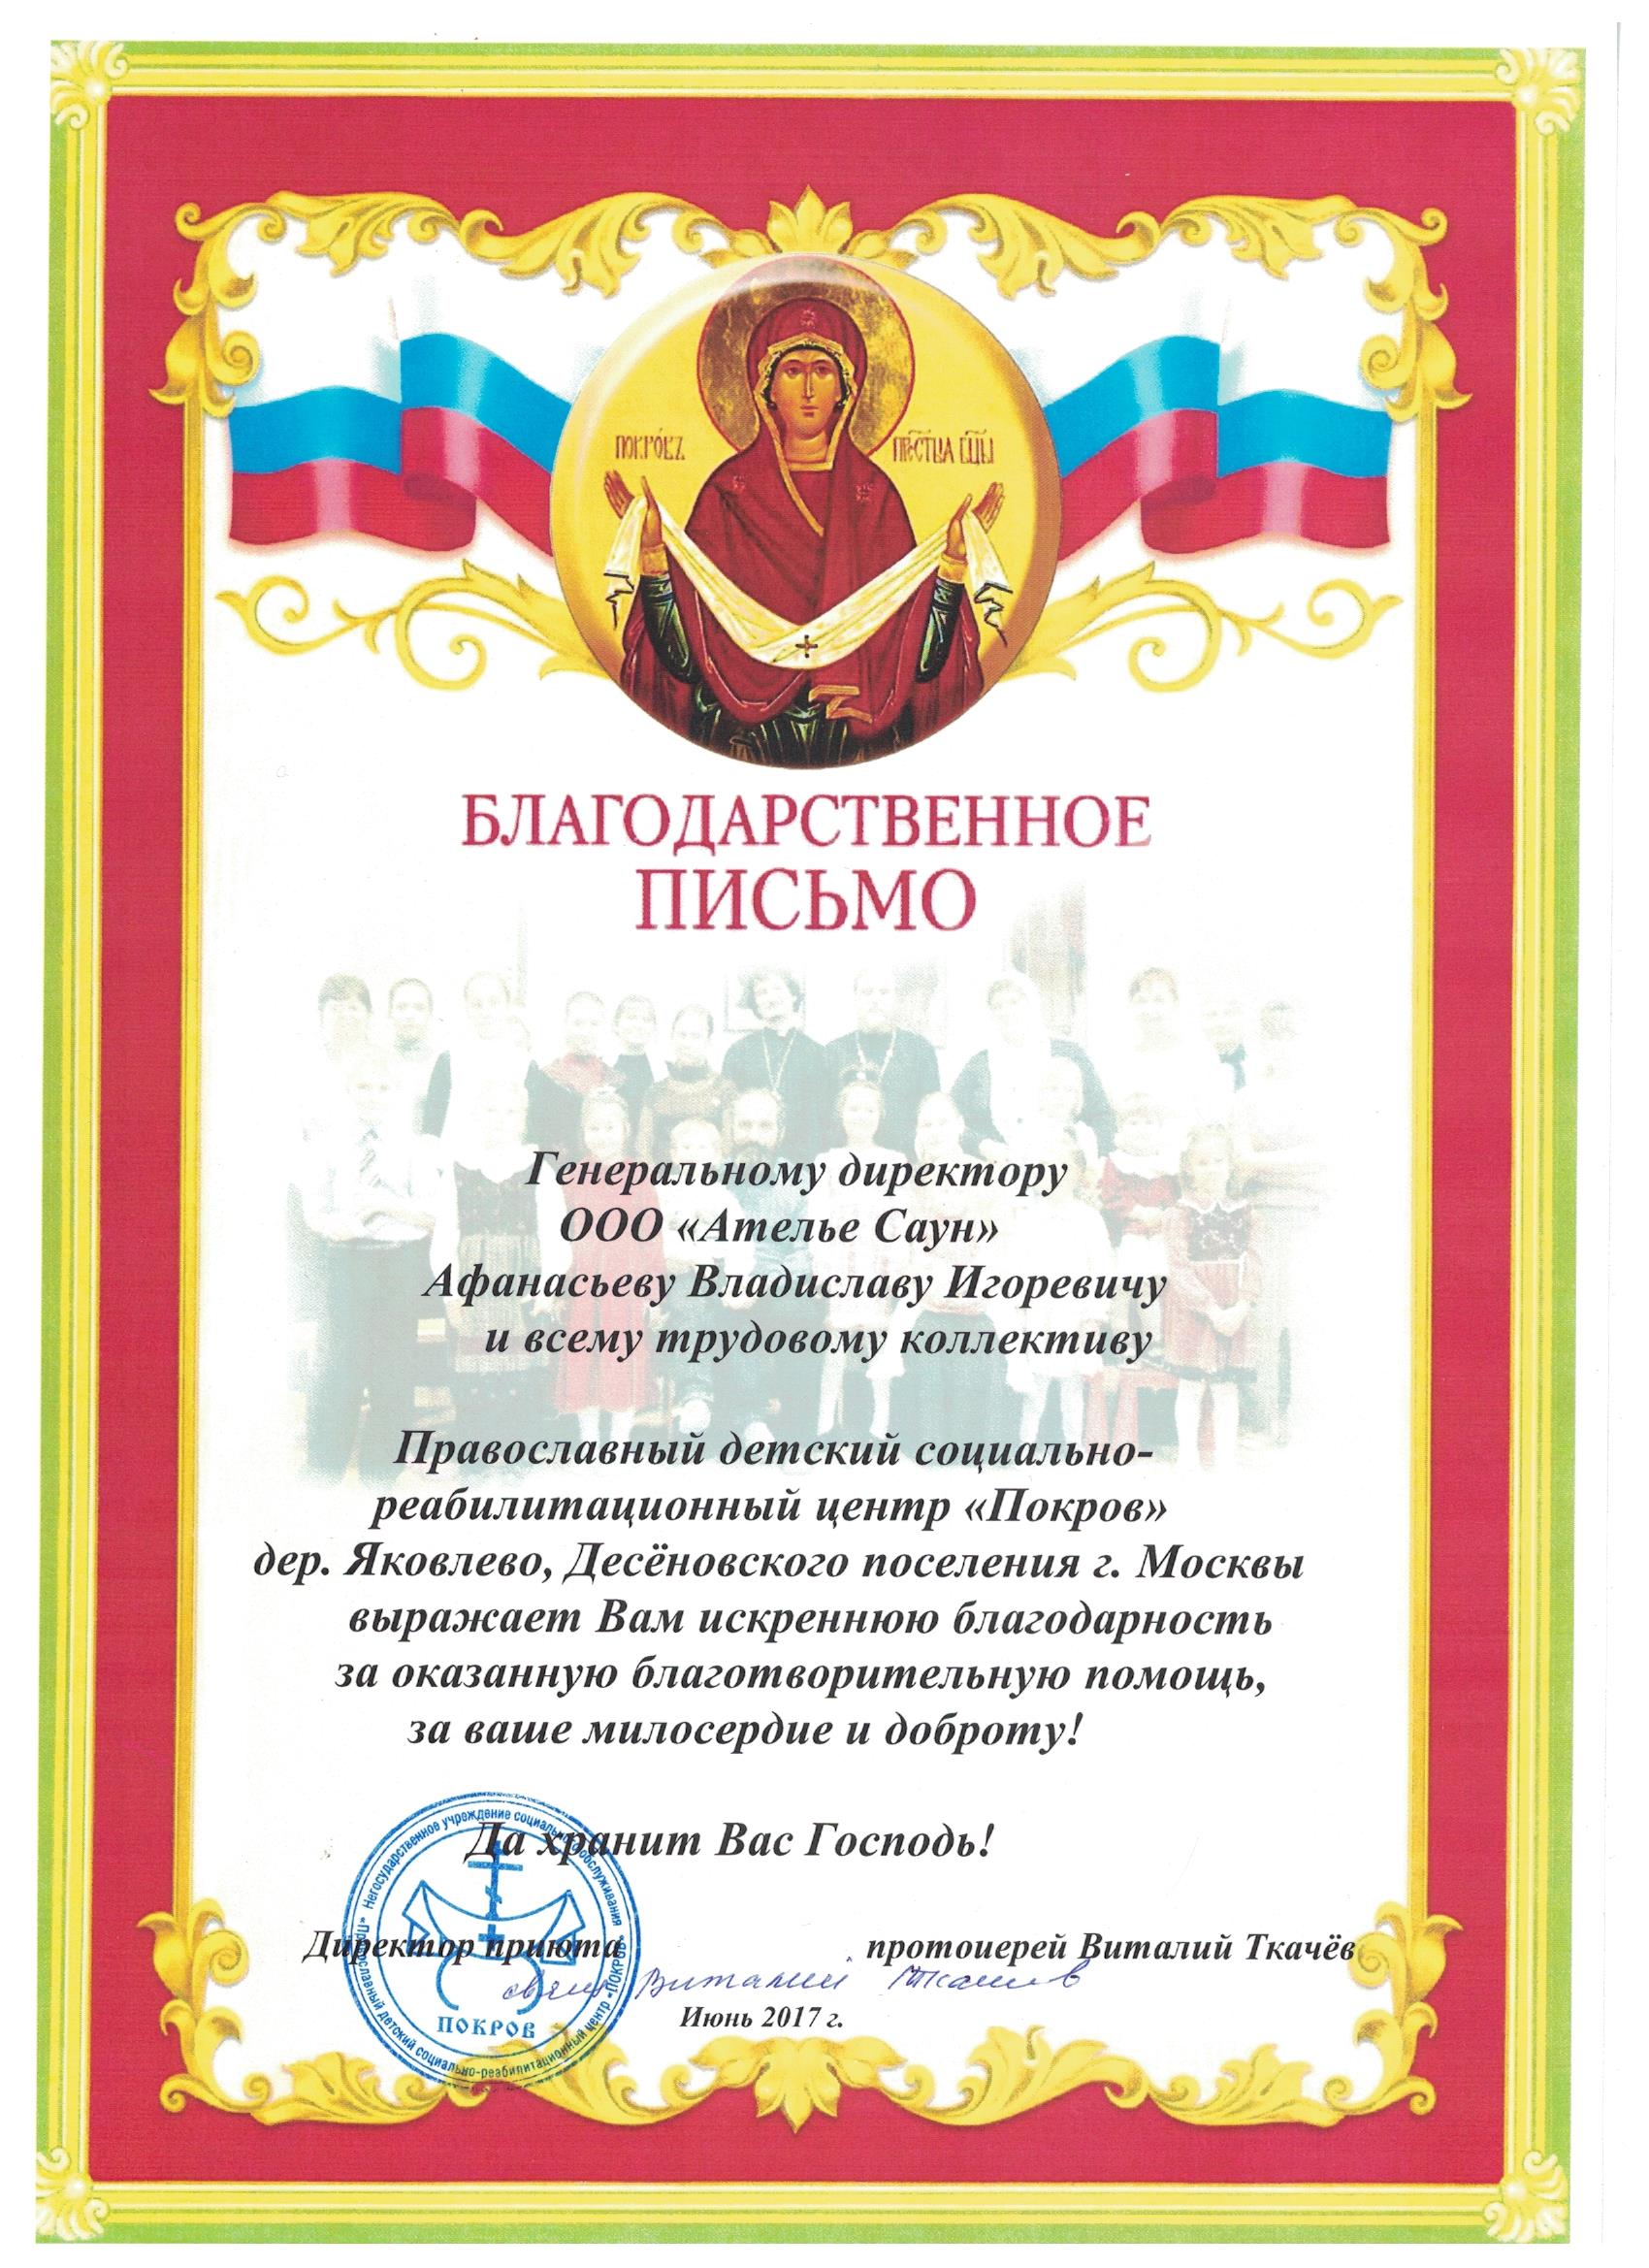 Благотворительность в адрес Православного детского социально-реабилитационного центра Покров (фото)